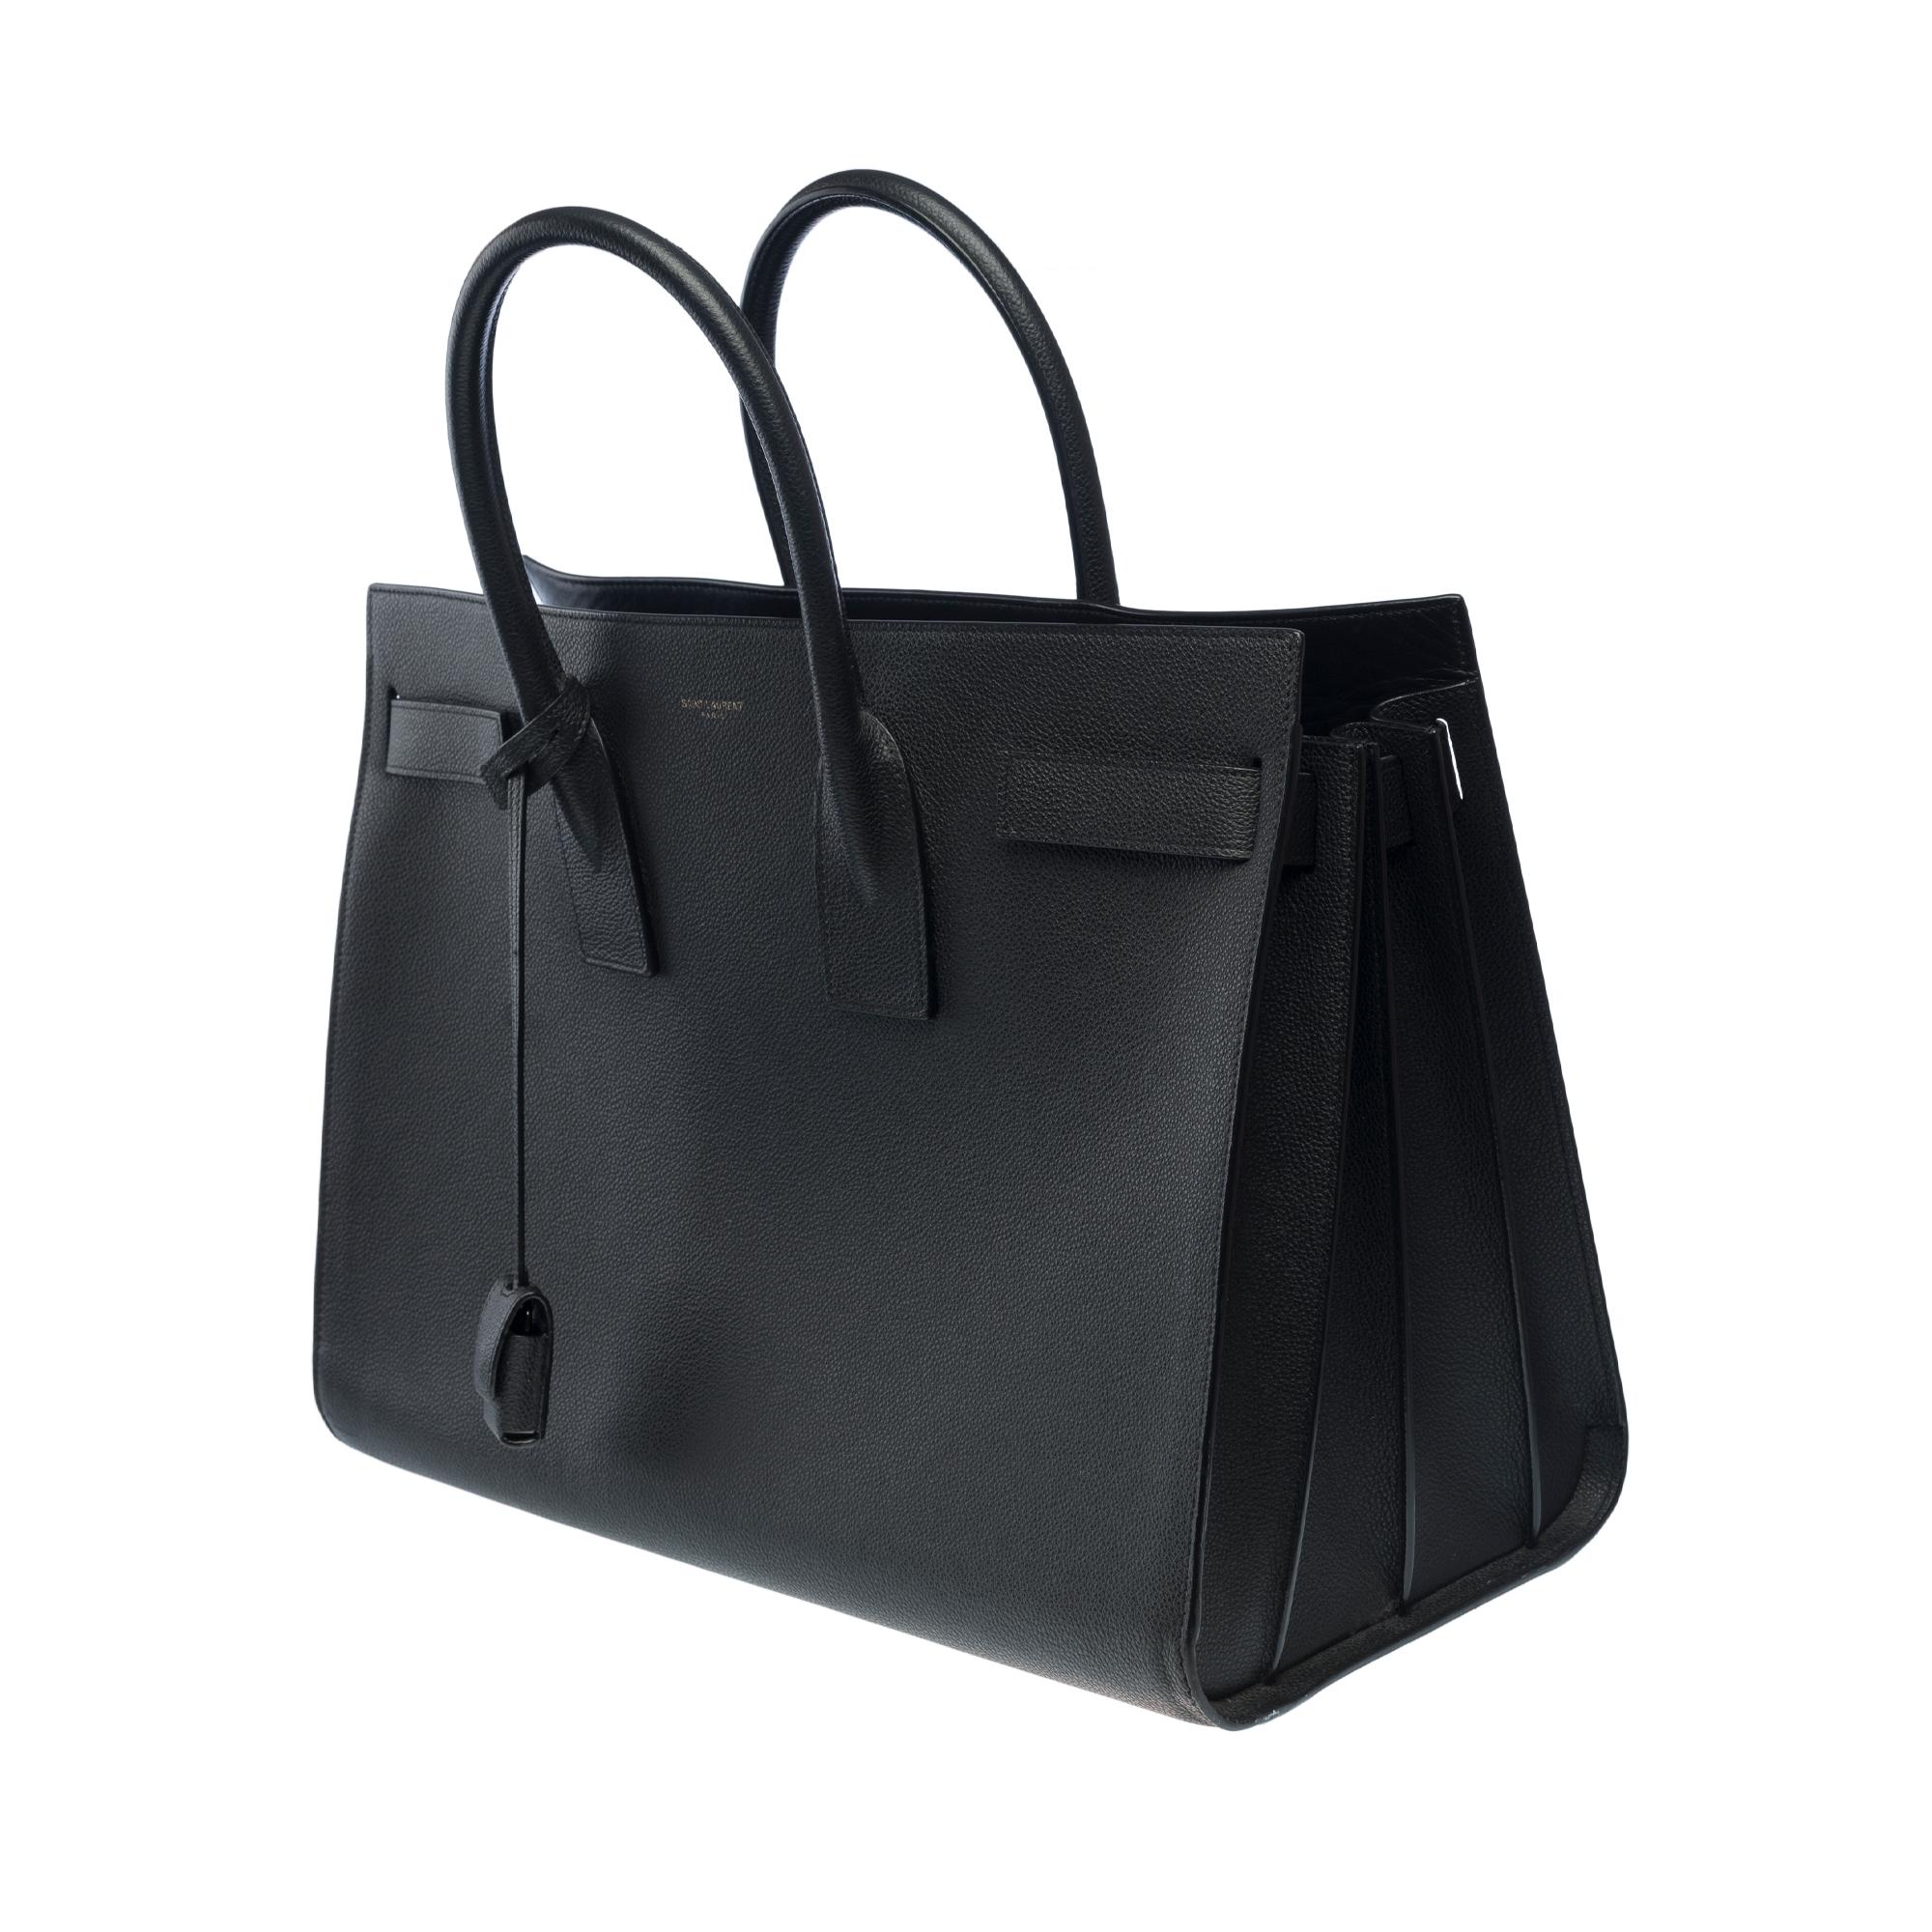 Women's or Men's Saint Laurent Sac de Jour Large size handbag strap in black grained leather